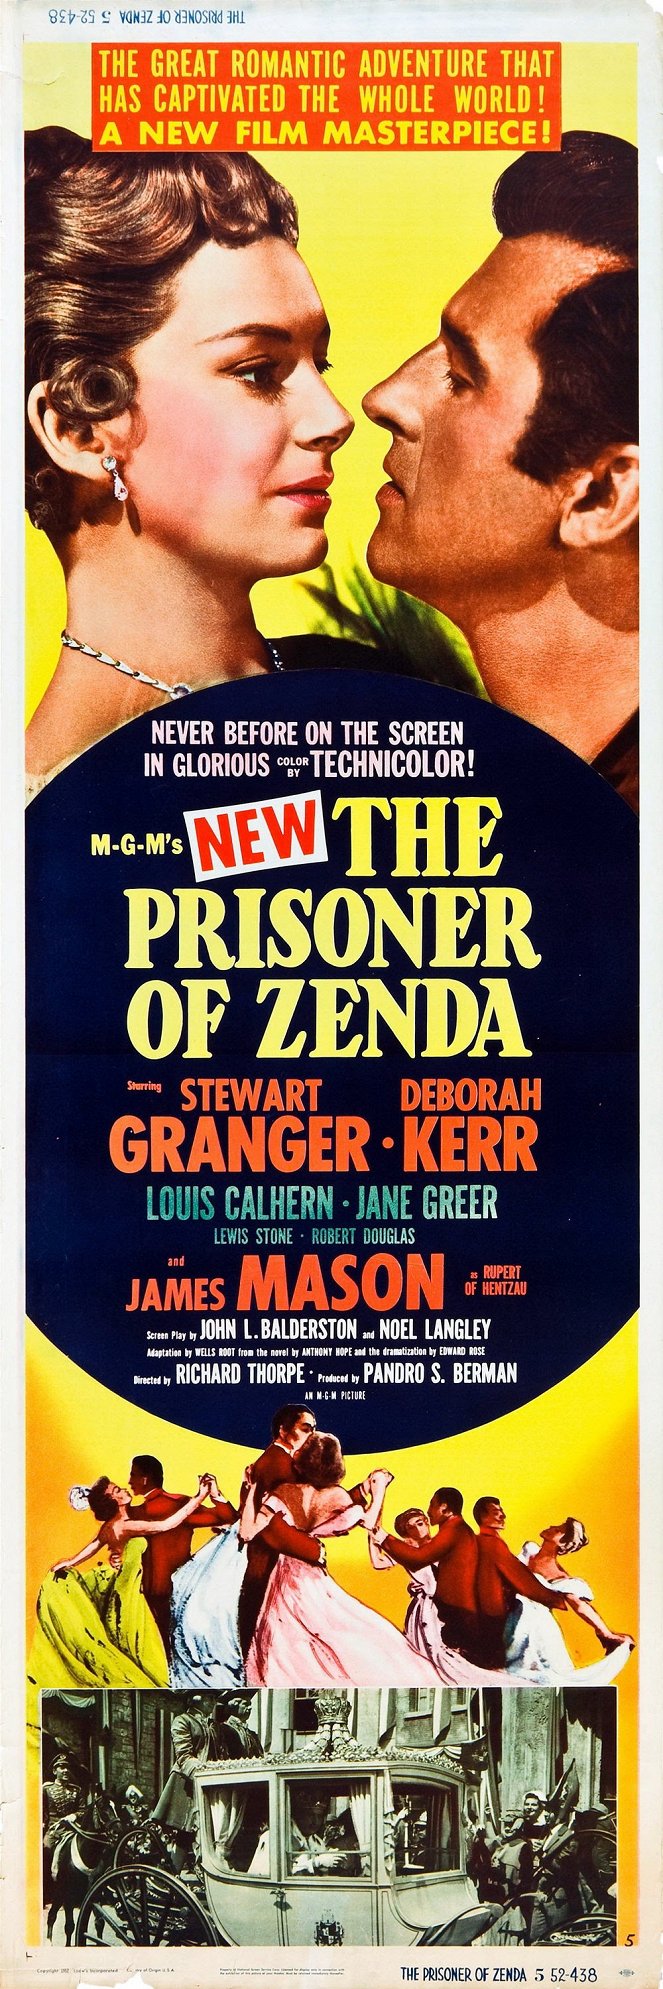 El prisionero de Zenda - Carteles